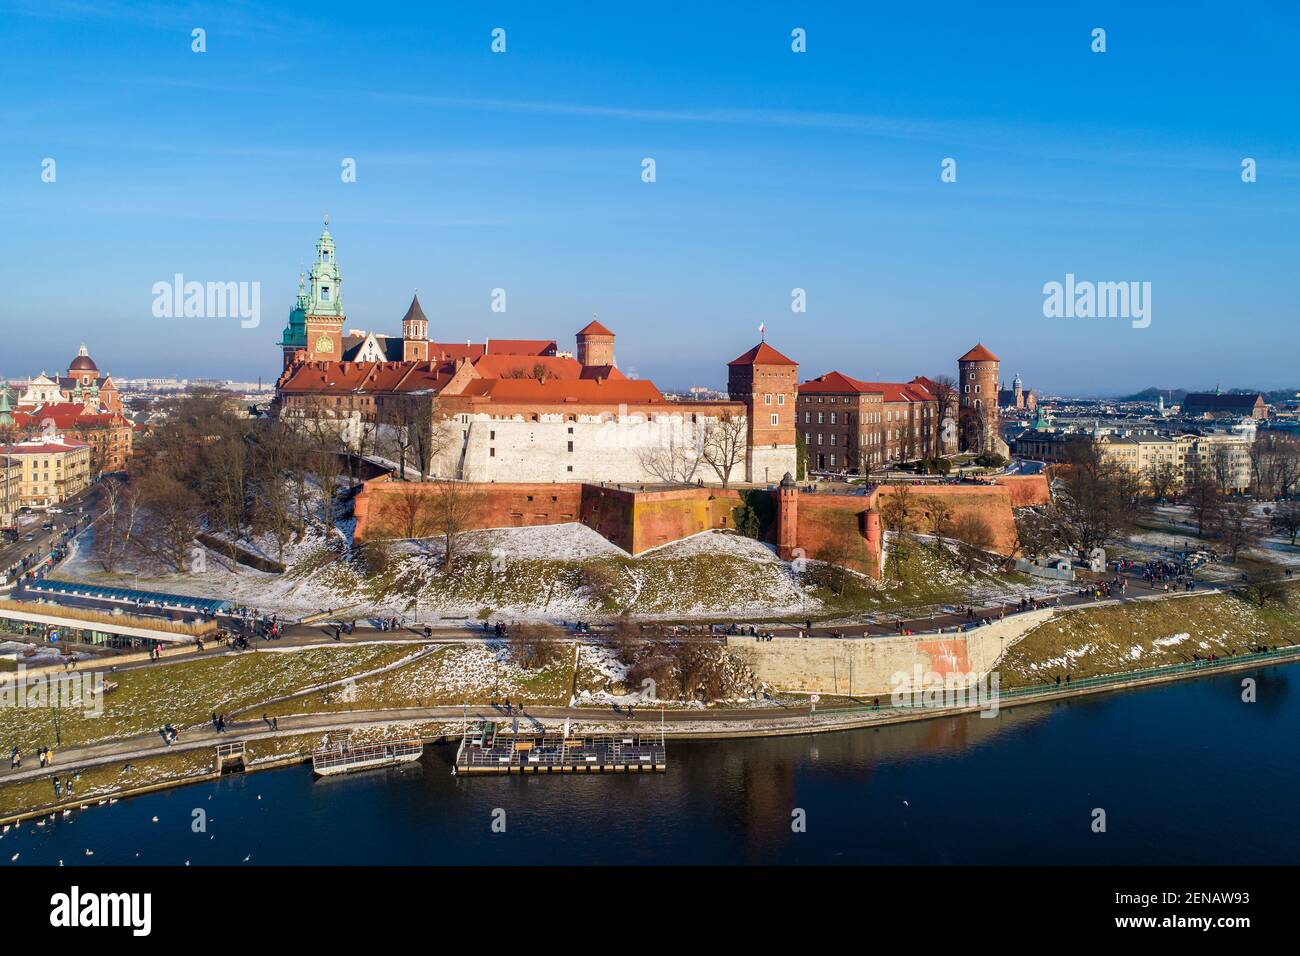 Historisches königliches Wawel-Schloss und Kathedrale in Krakau, Polen, mit Weichsel, Promenade, Spaziergänger und Schwäne im Winter Stockfoto